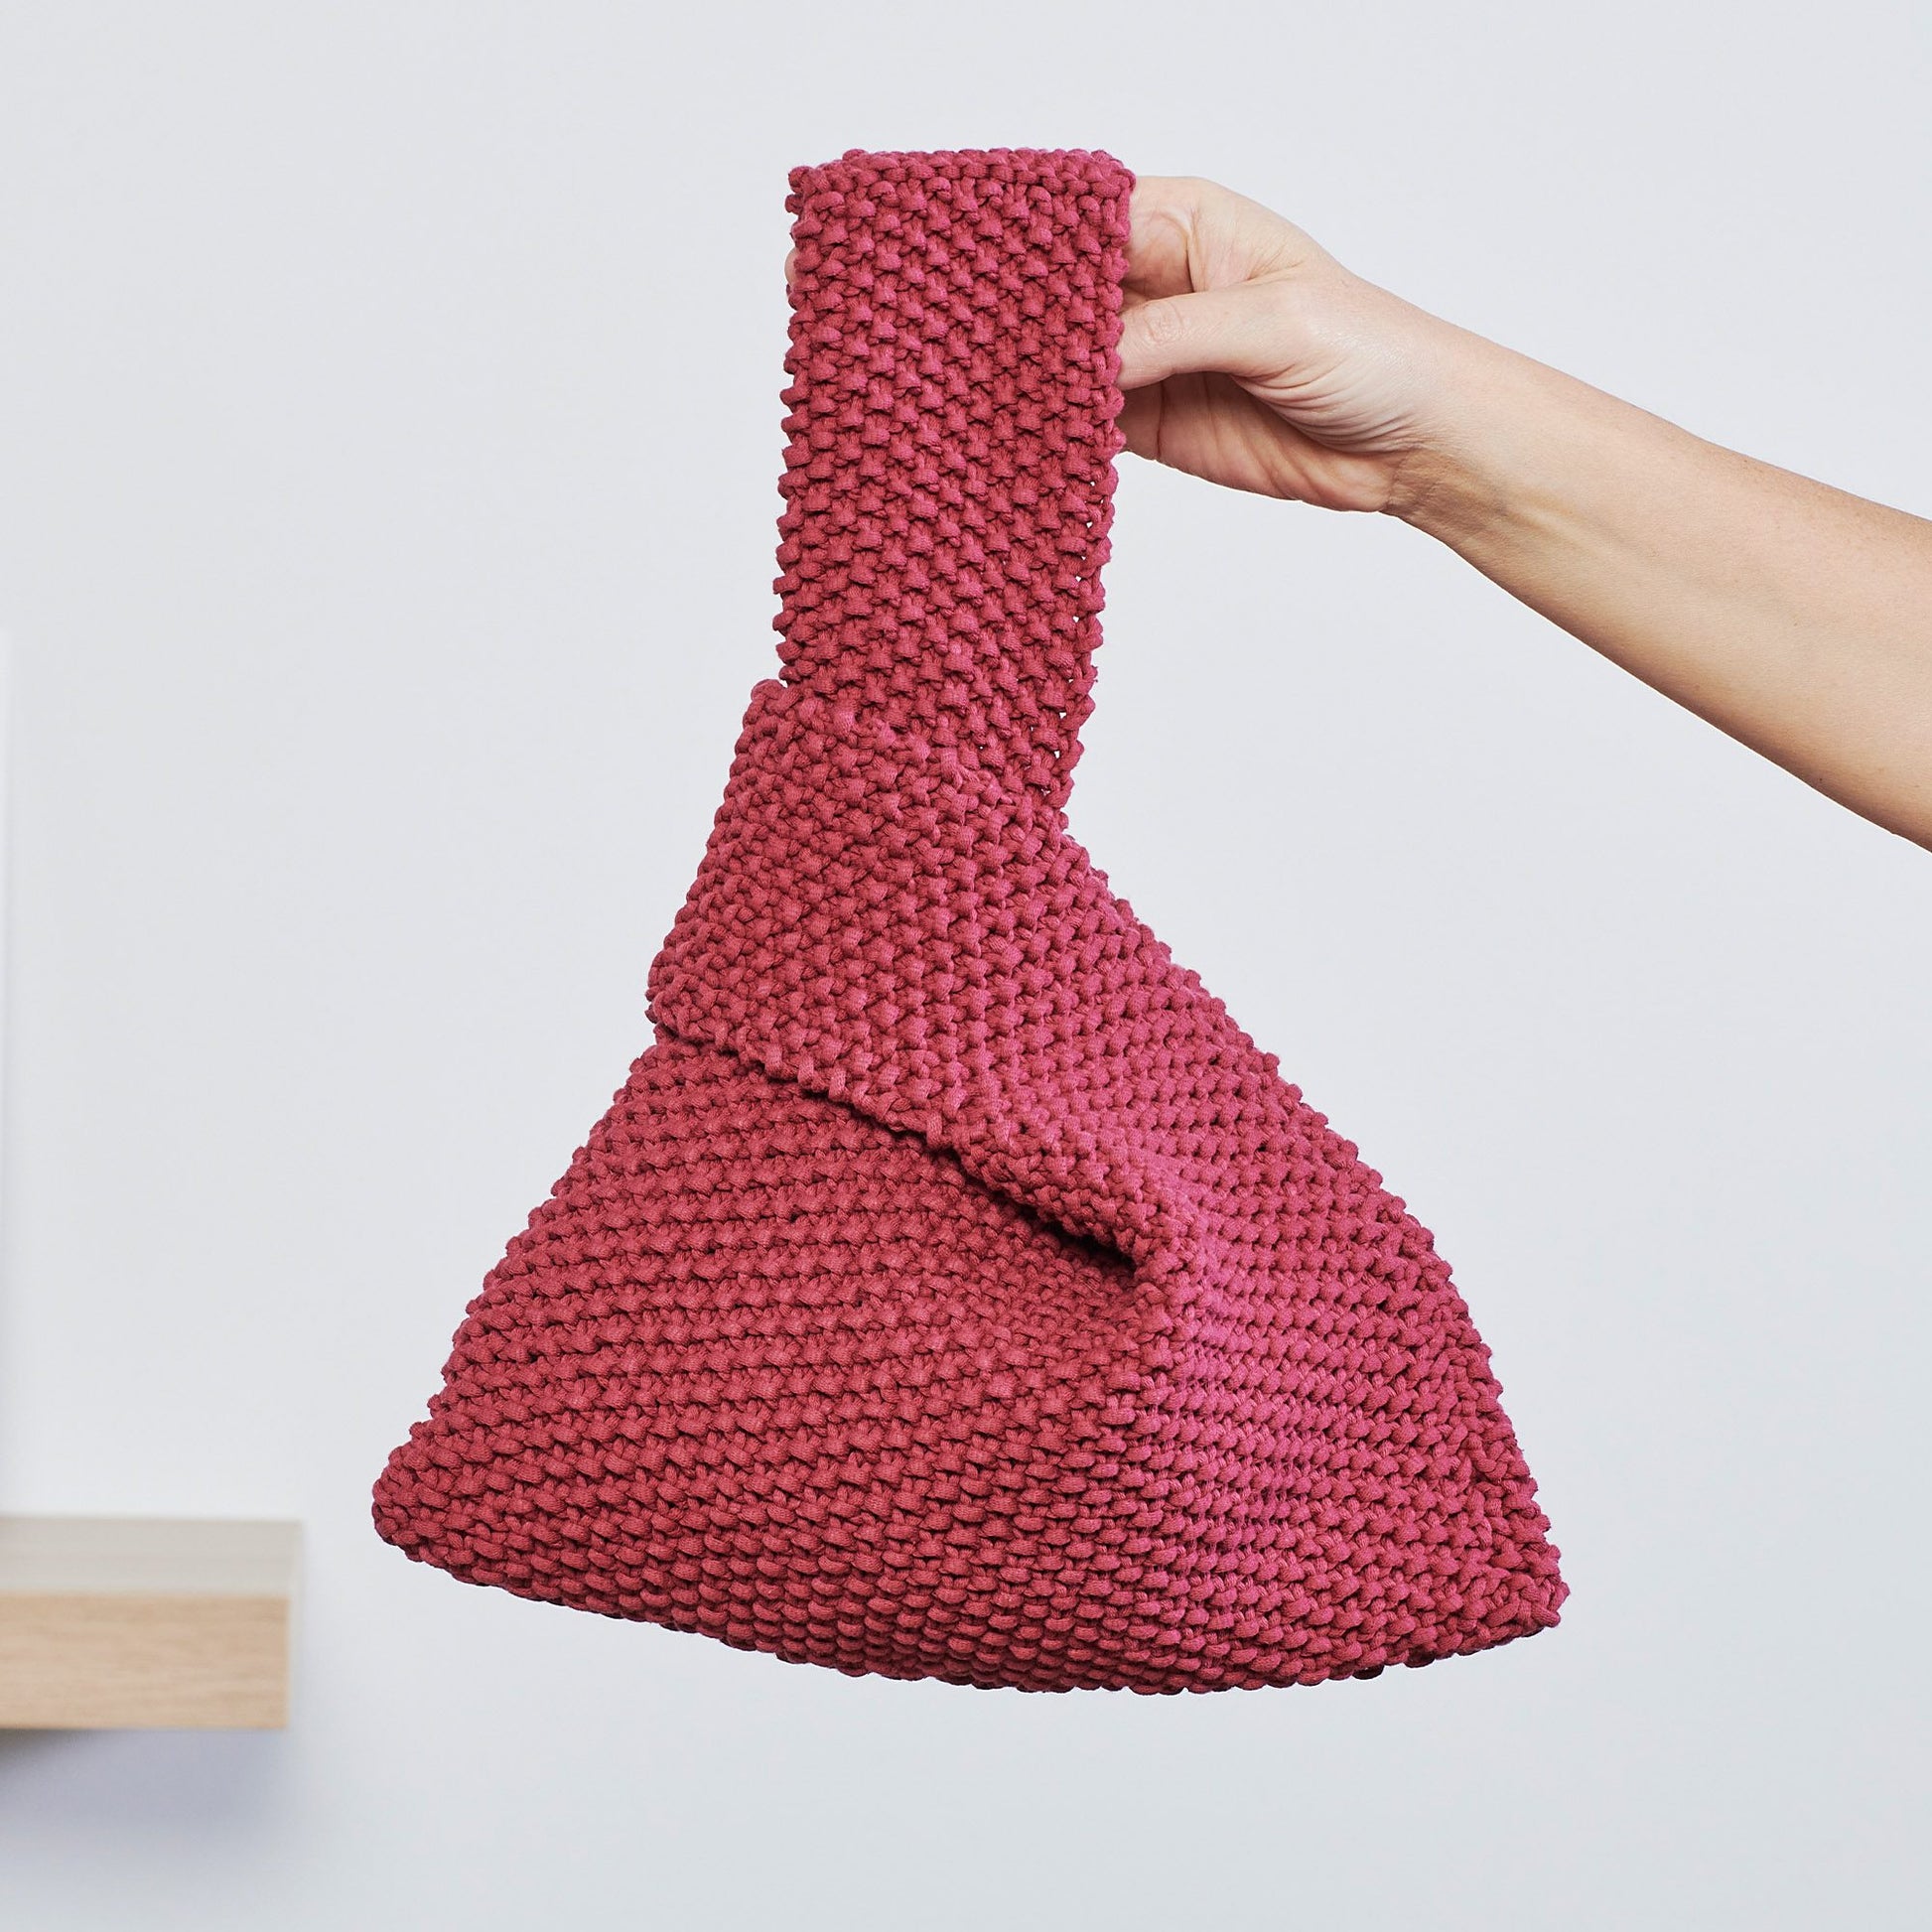 Free Bernat Seed Stitch Knit Knot Bag Pattern